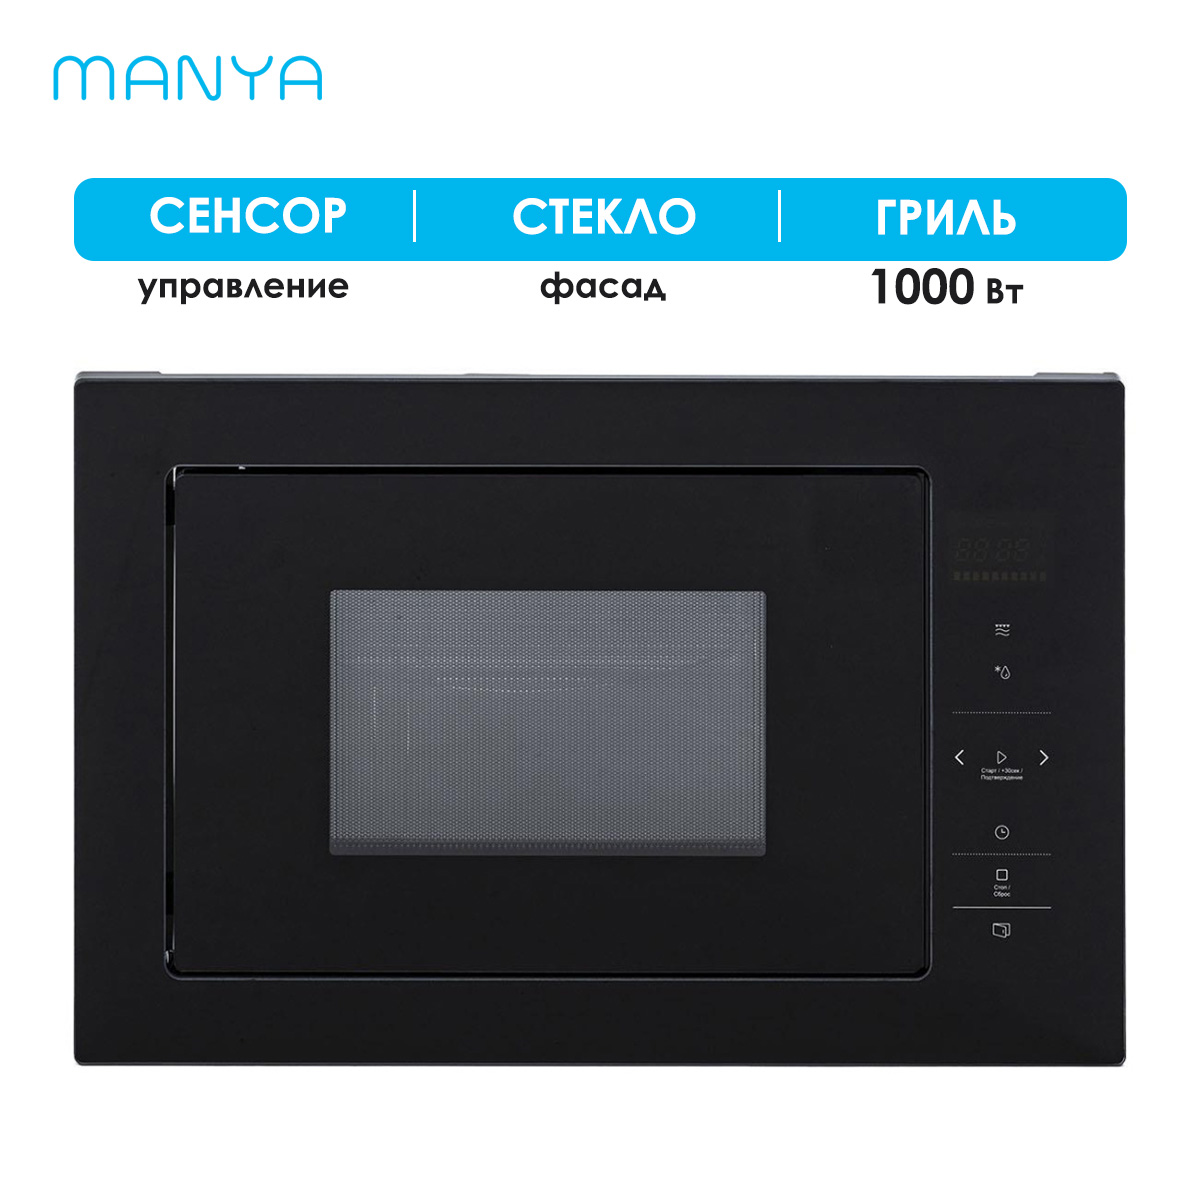 Встраиваемая микроволновая печь Manya BM2511BG черная встраиваемая микроволновая печь thomson bmo10 m2101 серебристая черная